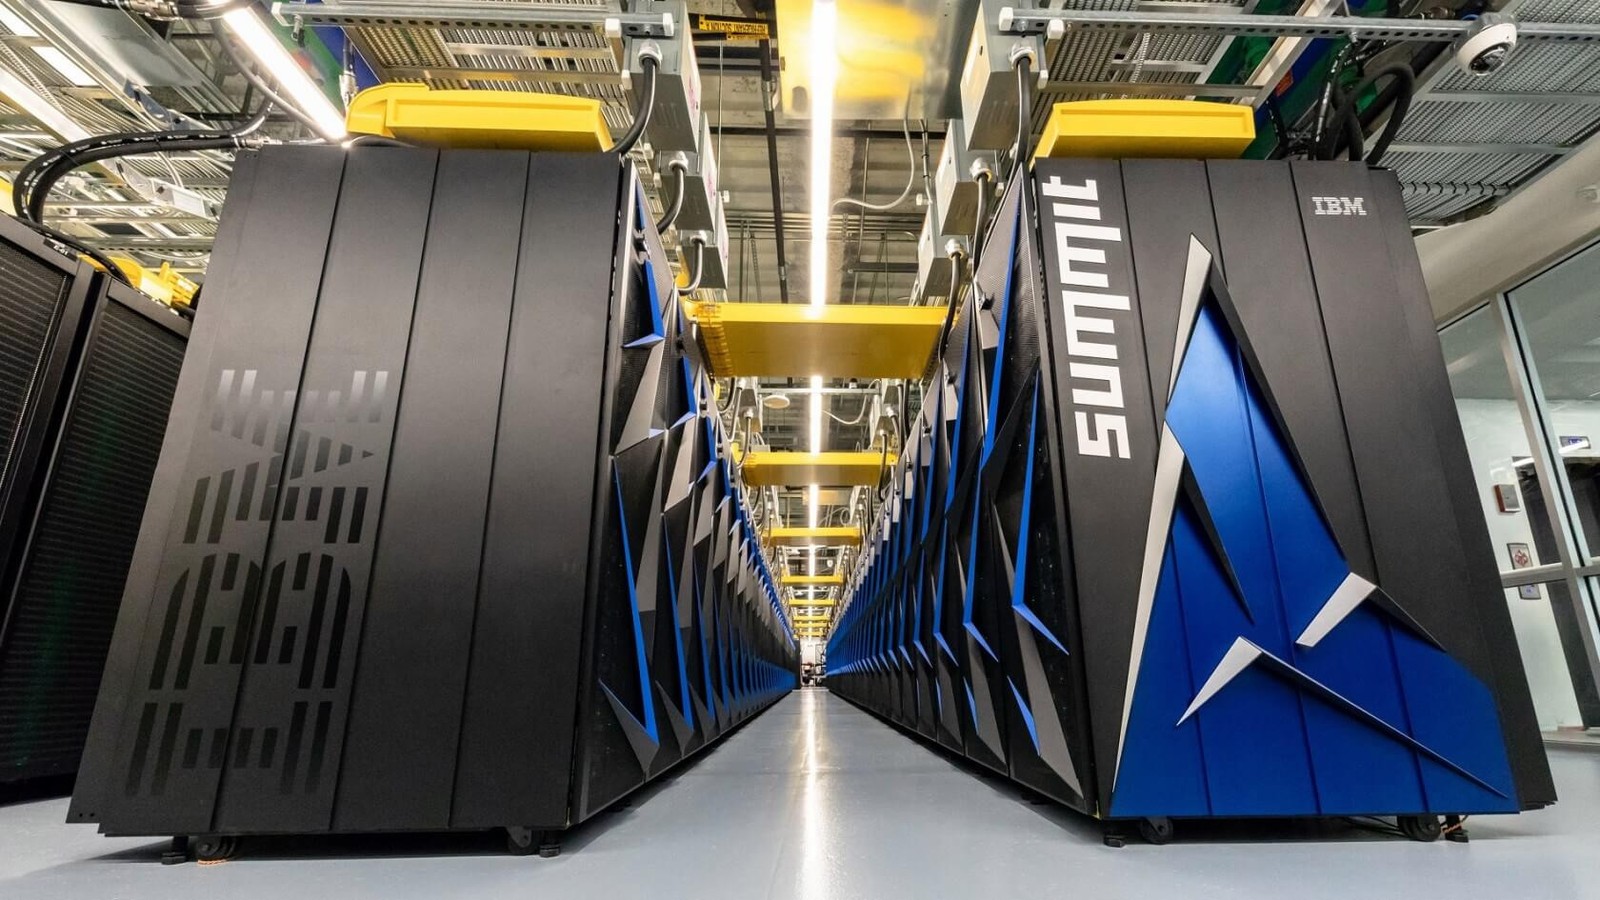 Summit – Amerykanie znowu na szczycie listy najszybszych superkomputerów